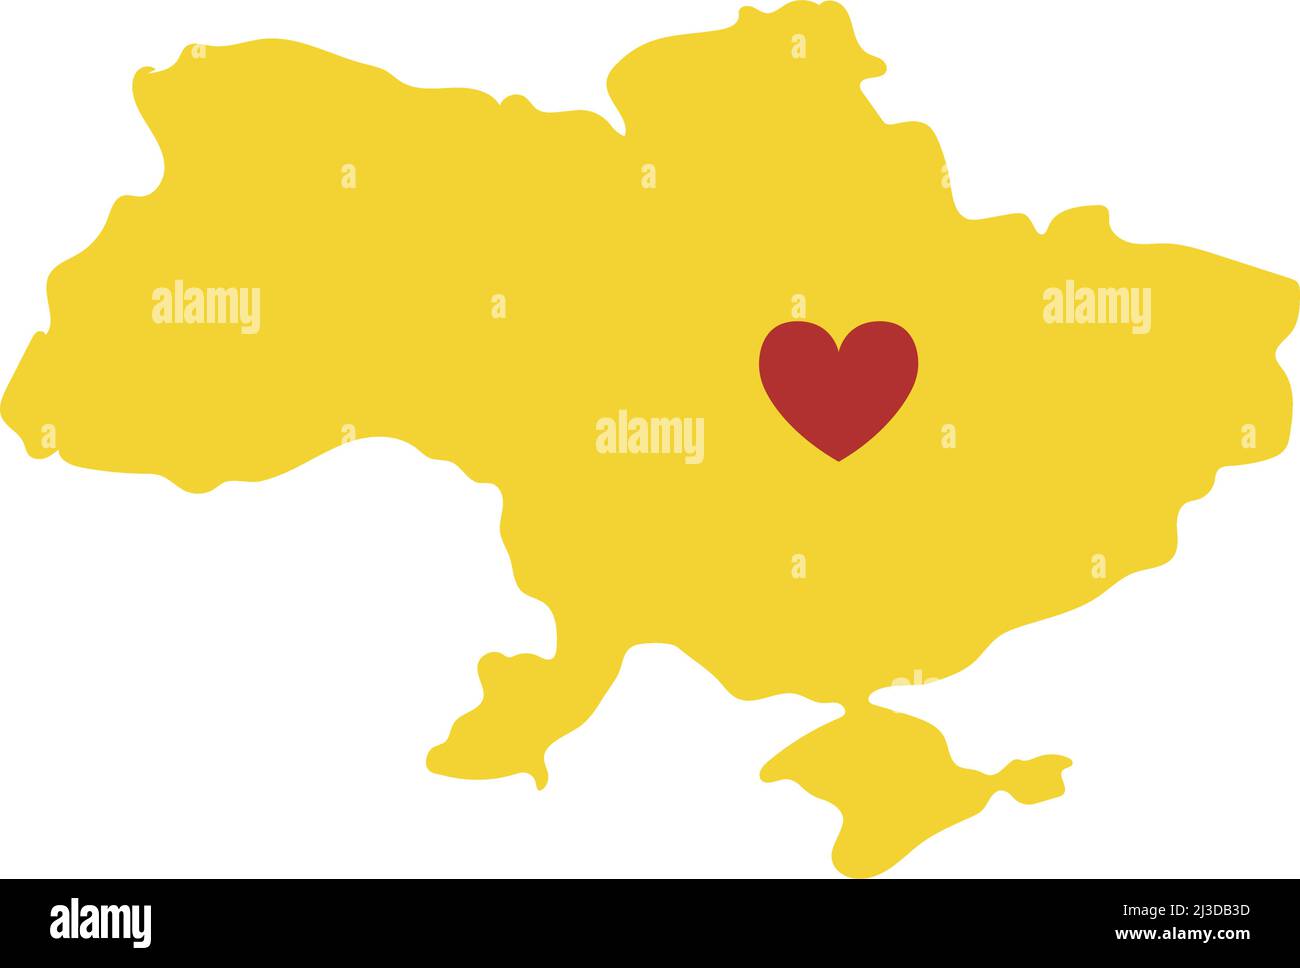 Stop war in Ukraine Konzept Vektor-Illustration. Herz, Liebe zur Ukraine, ukrainische Flagge und Kartendarstellung. Rette die Ukraine vor Russland. Stock Vektor